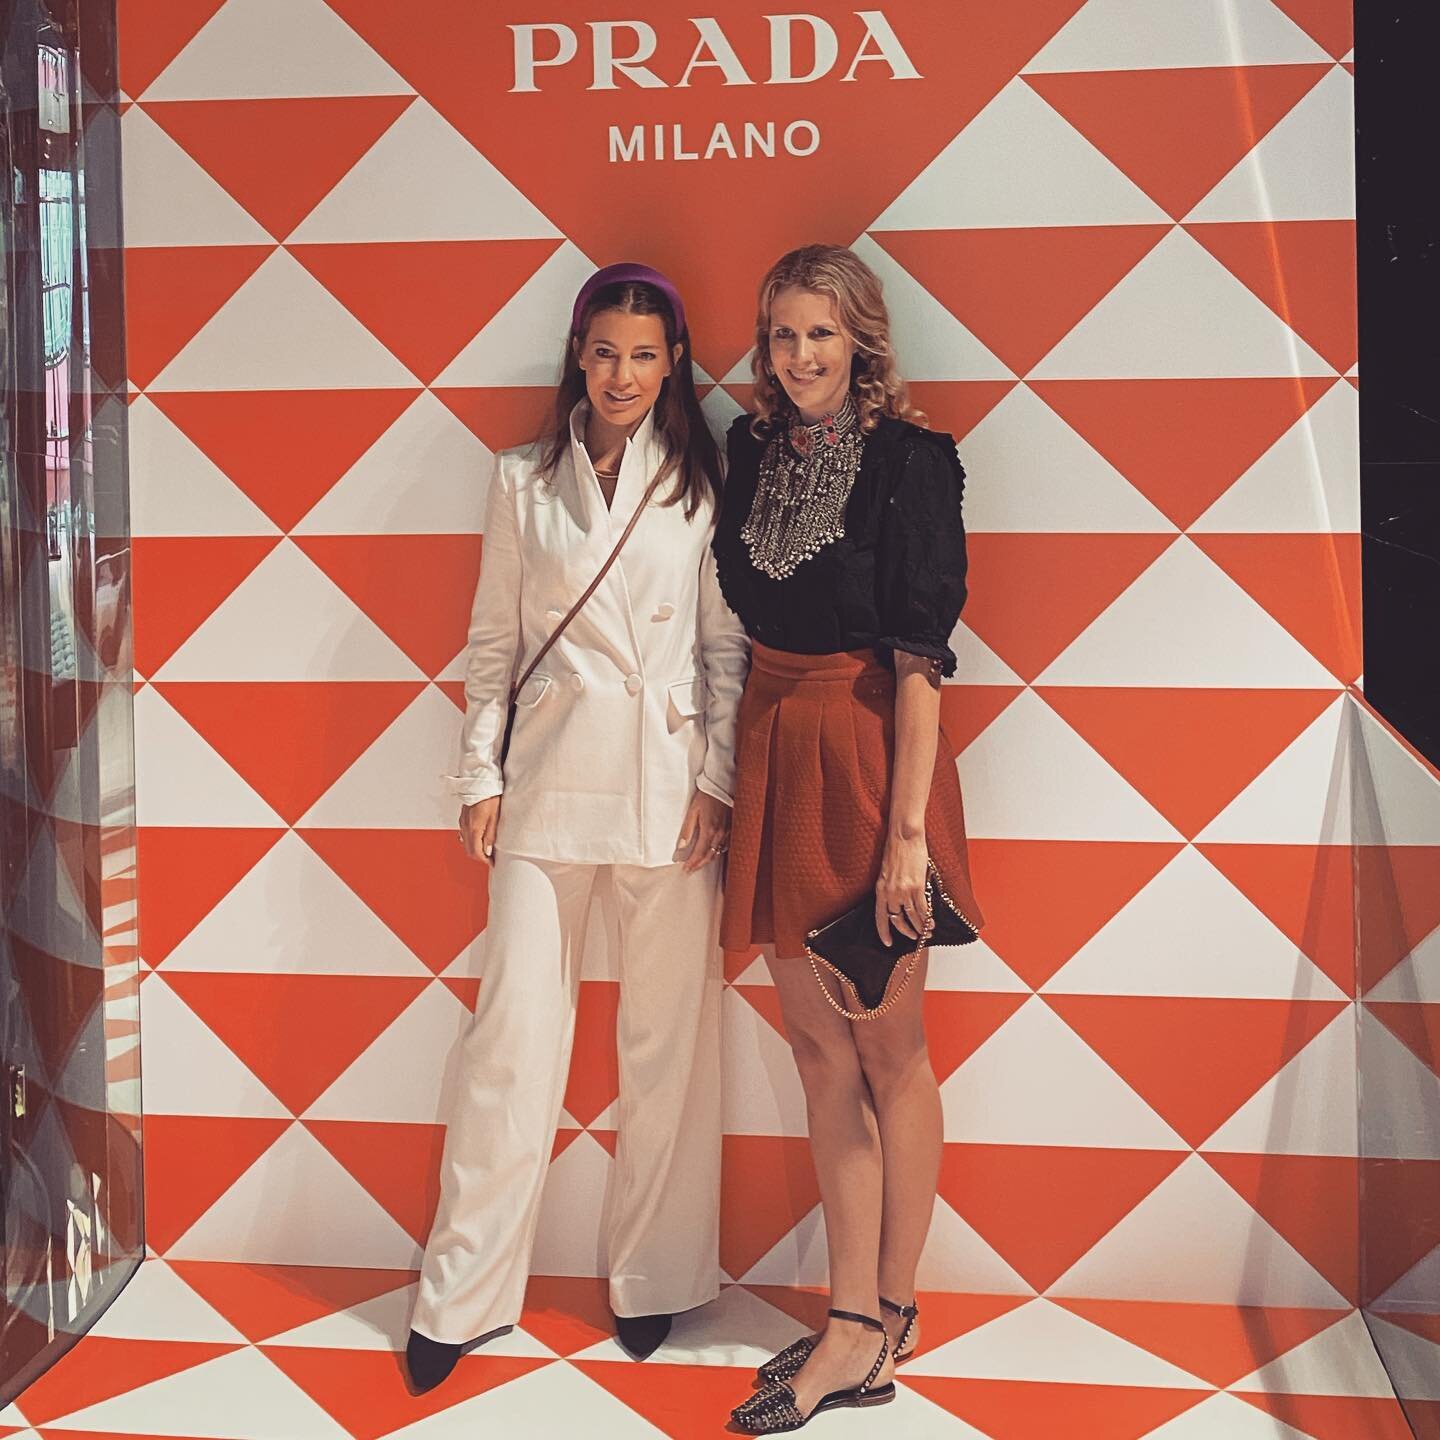 Many thanks @prada and @clairehoyos for having us last night 💃🏻🥂🍾 #whatafunnight #fashionlovers #prada #businessgirls #welovewhatwedo❤️